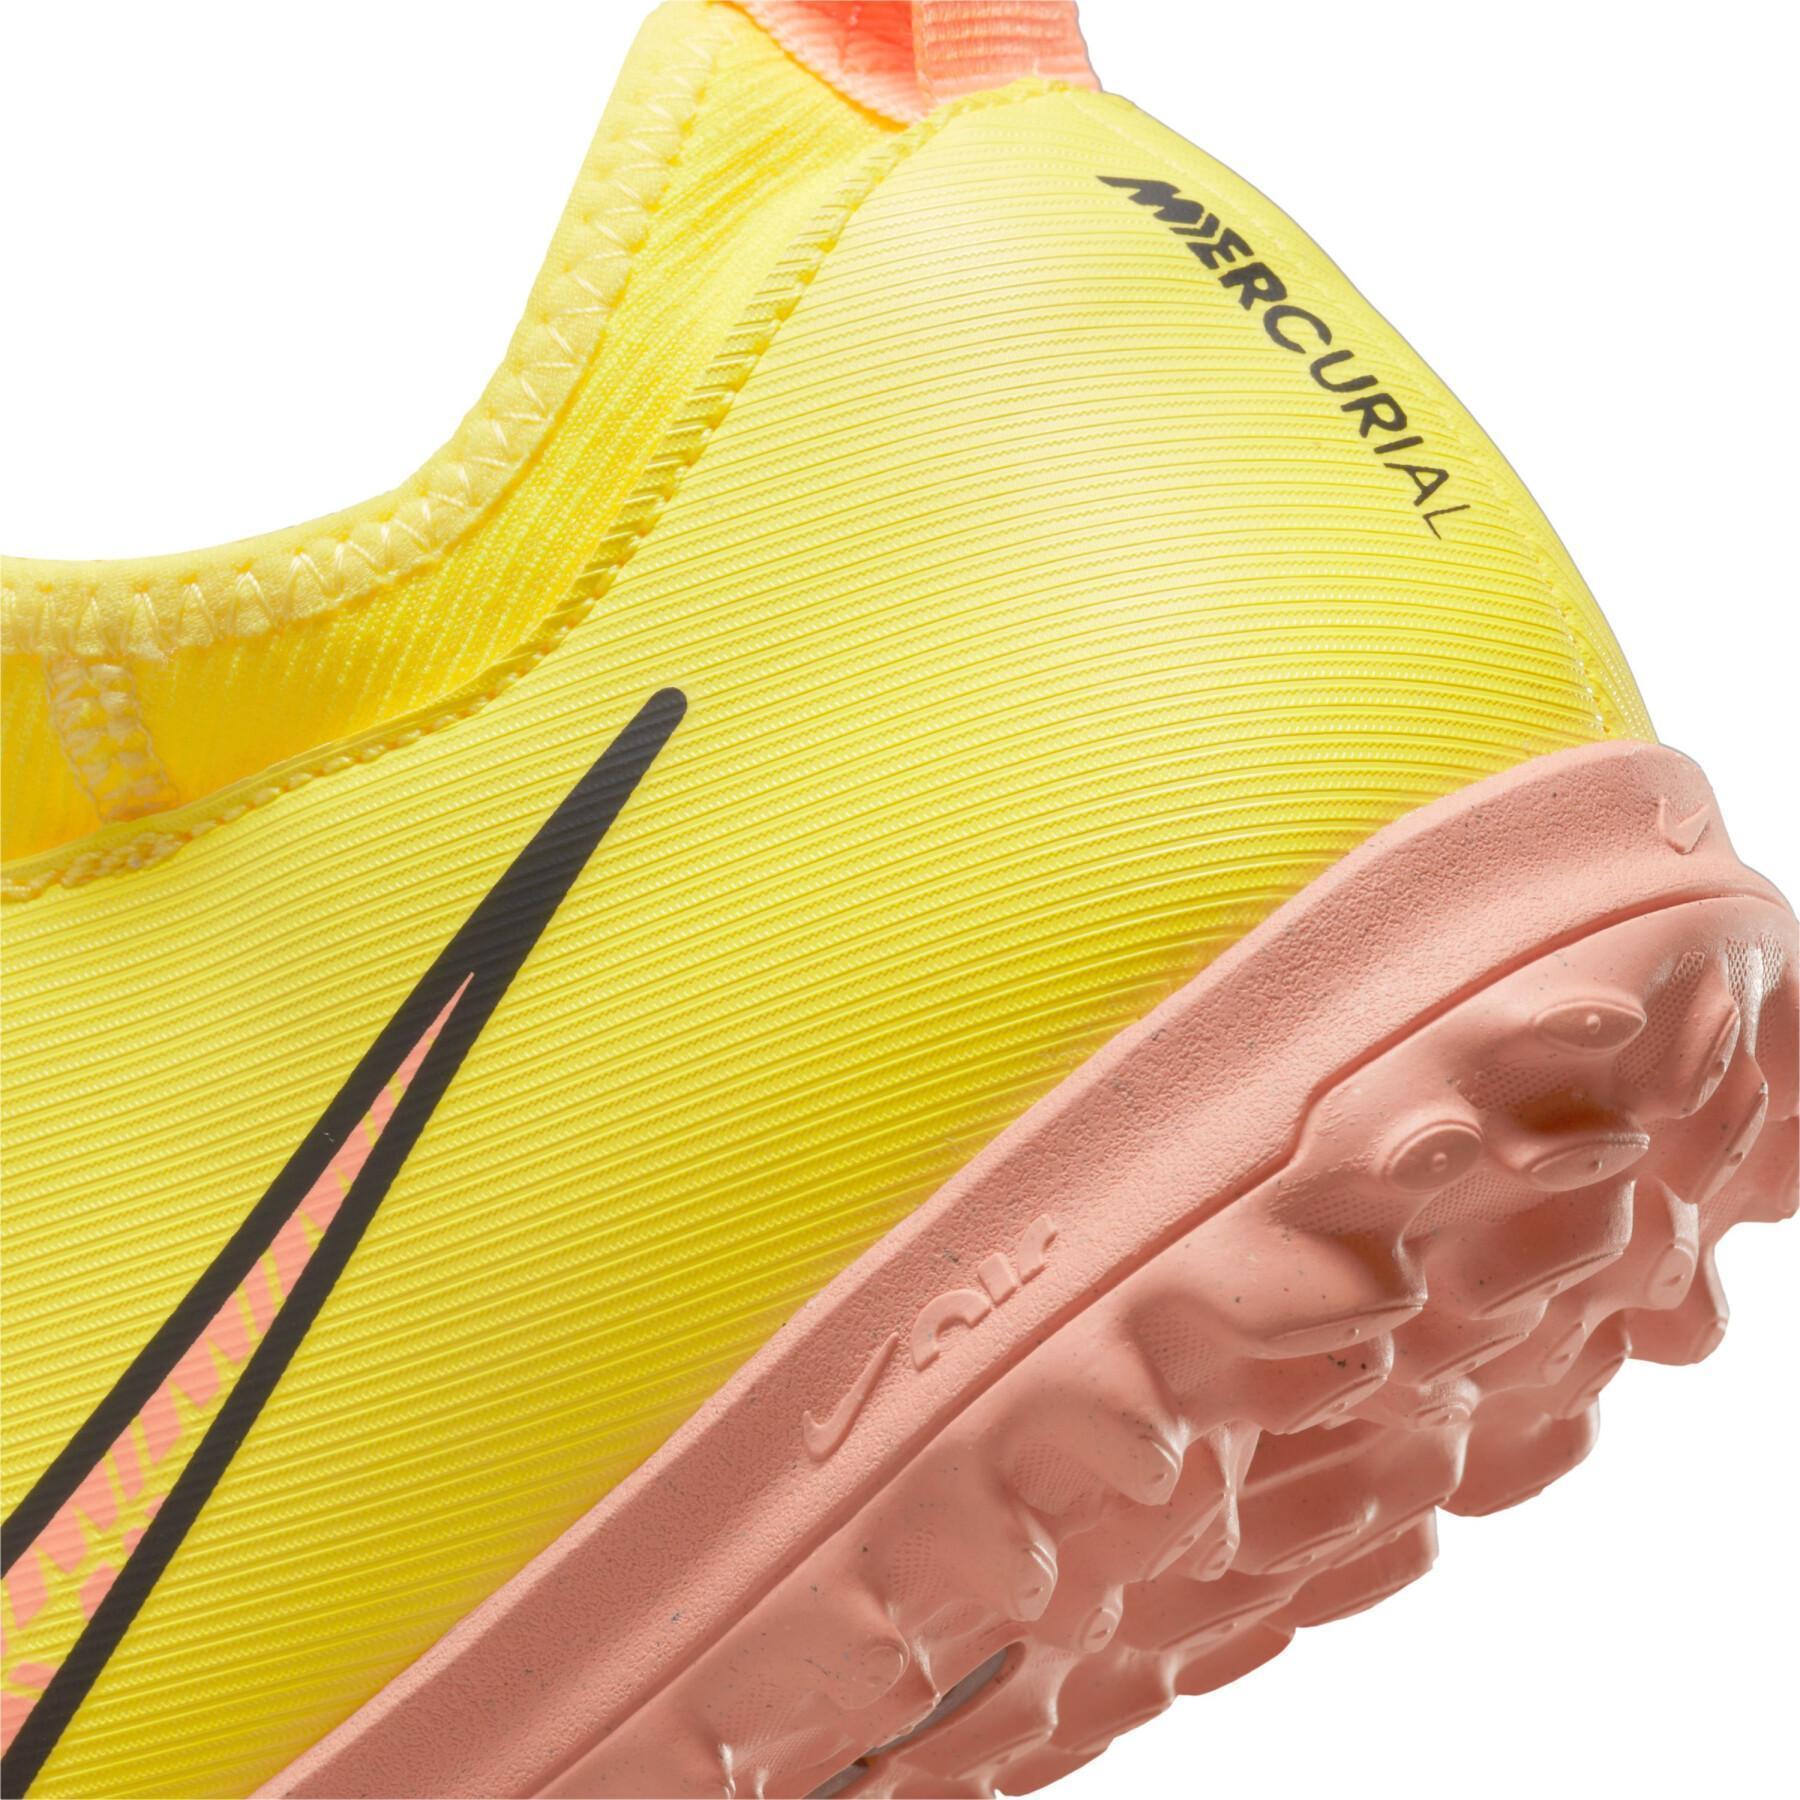 Sapatos de futebol para crianças Nike Zoom Mercurial Vapor 15 Academy TF - Lucent Pack